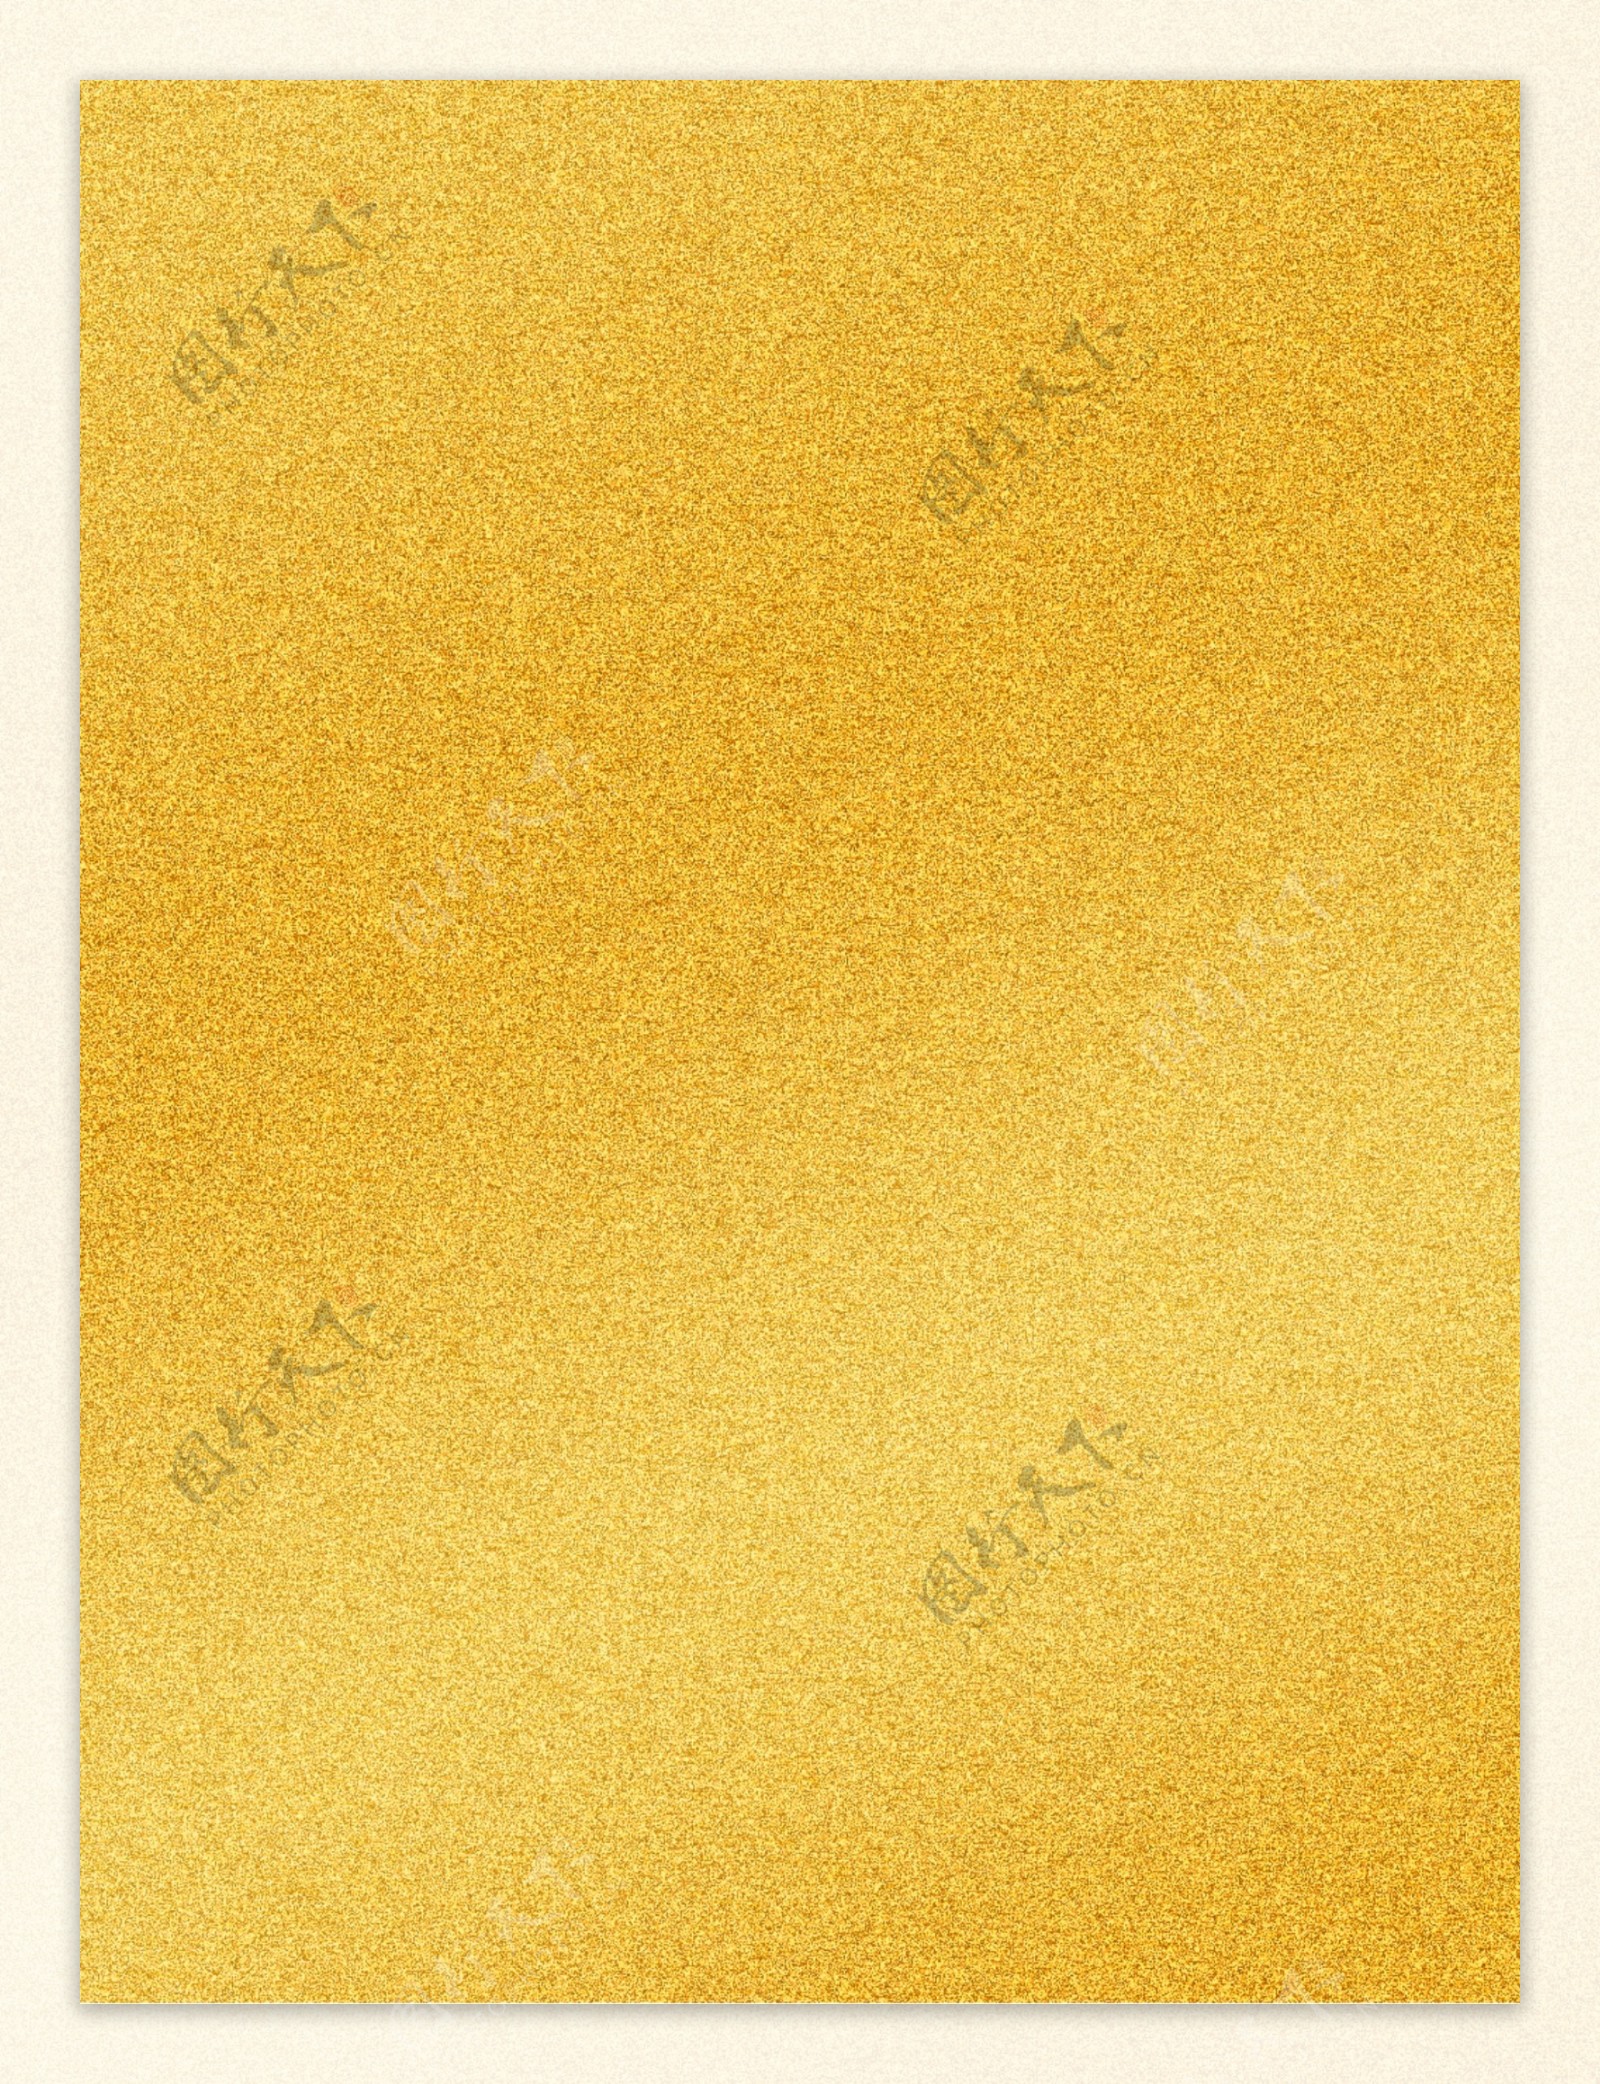 金色磨砂背景素材